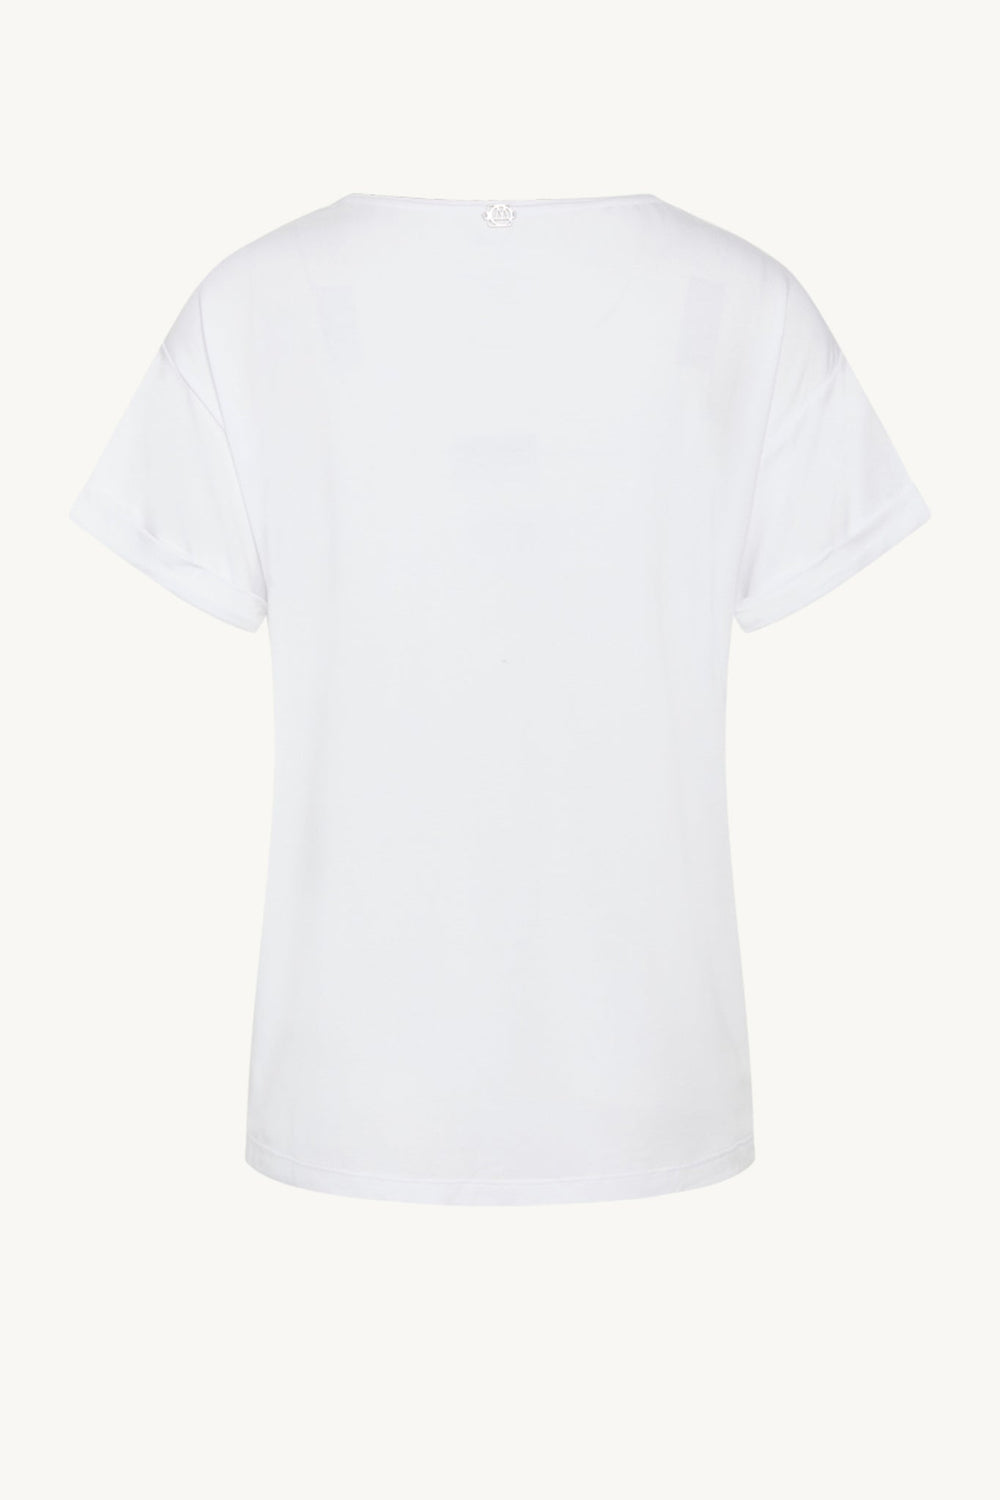 Cwaoife - T-Shirt White | Skjorter og bluser | Smuk - Dameklær på nett